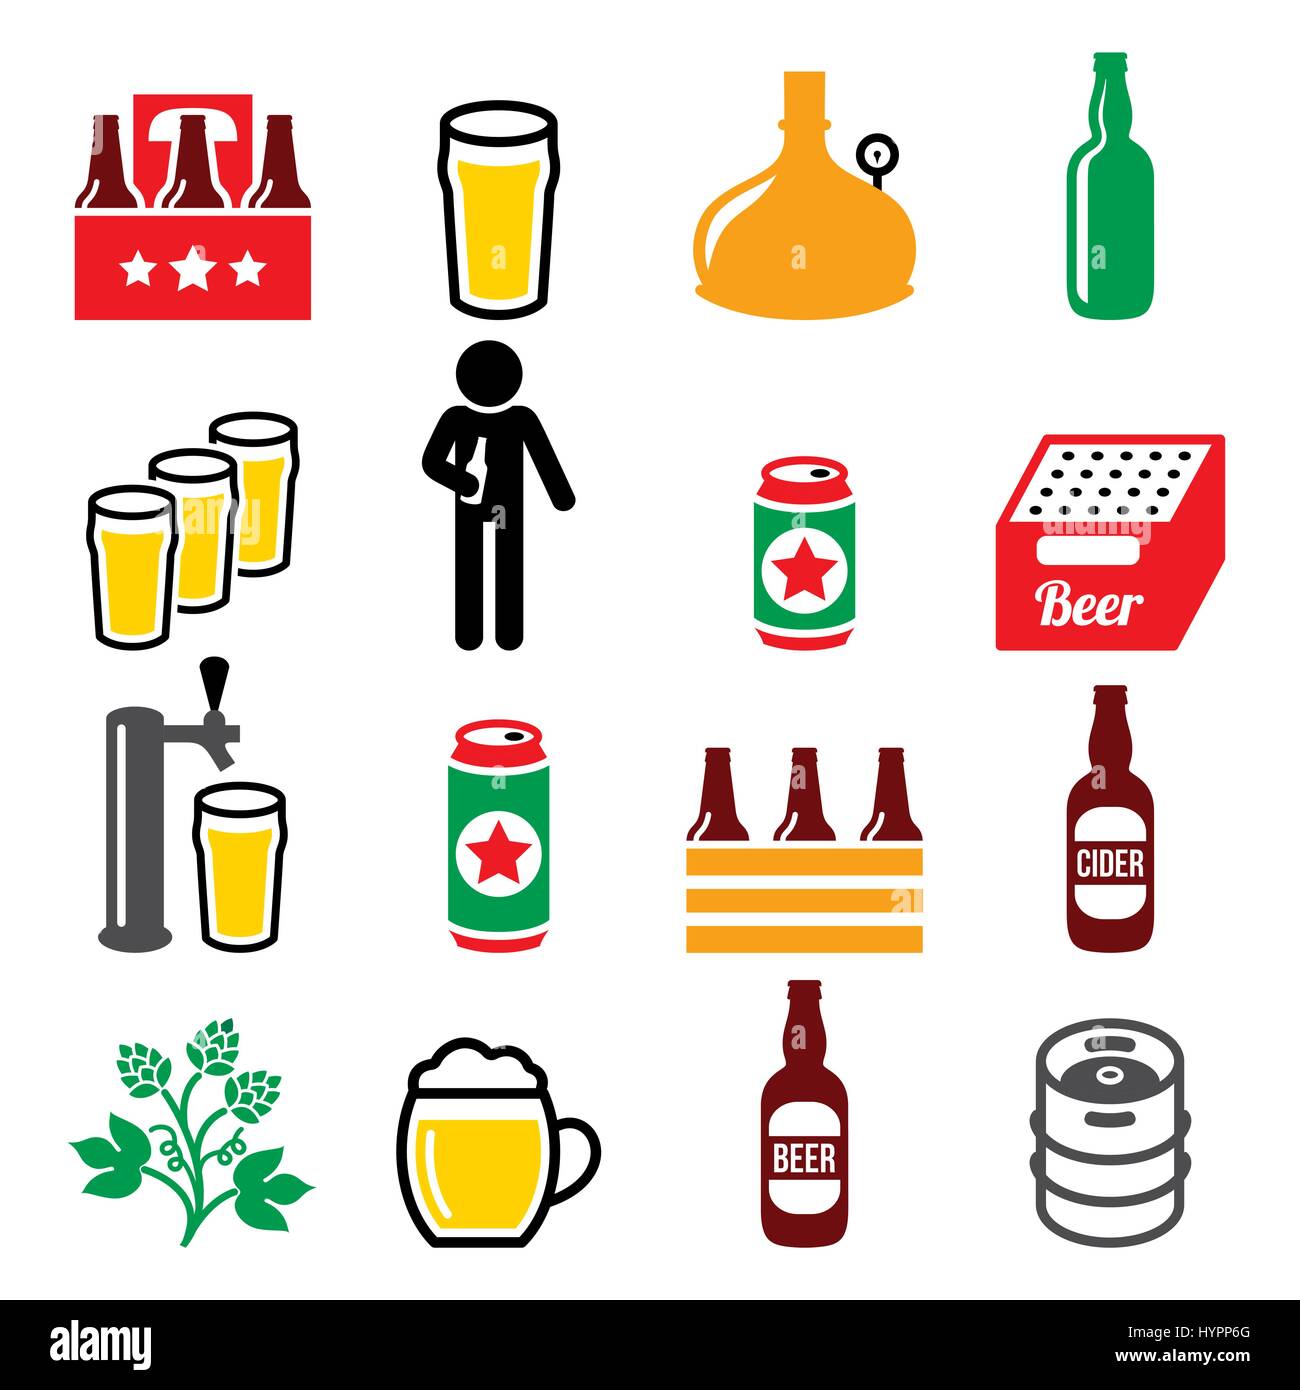 La bière, brasserie, boire de l'alcool en pub vector icons set Illustration de Vecteur